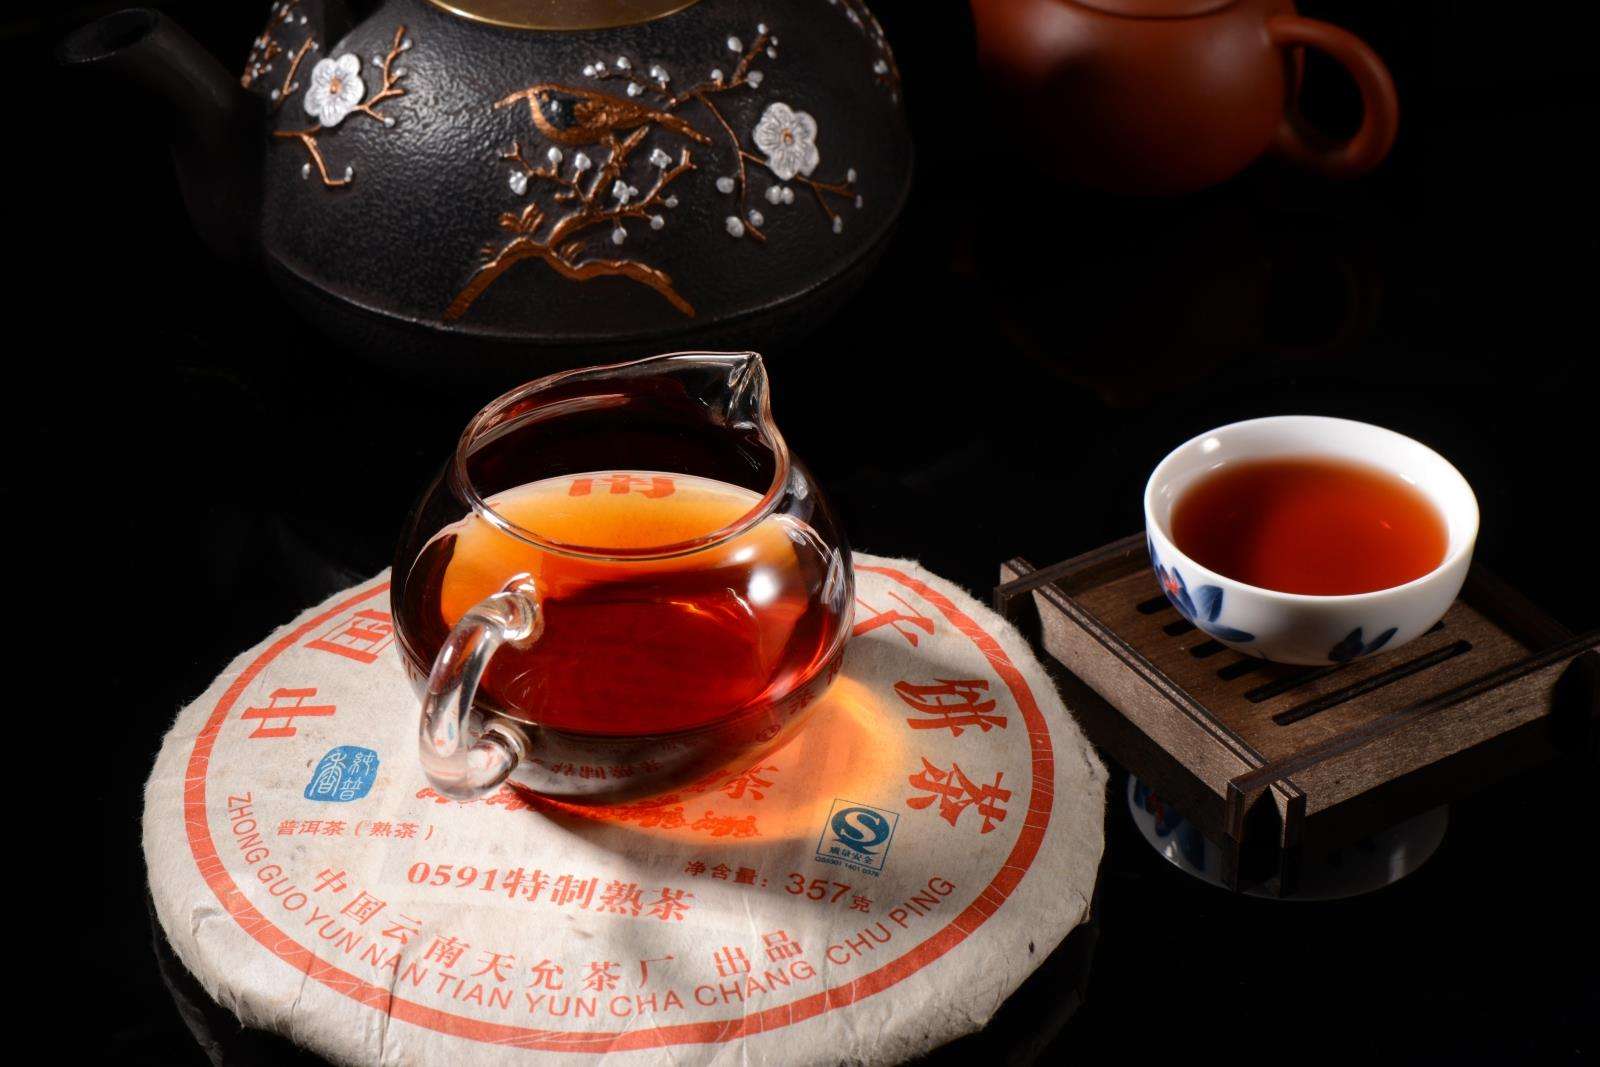 爱打扮(www.idaban.cn)，为何存茶？只因乐趣与回忆38